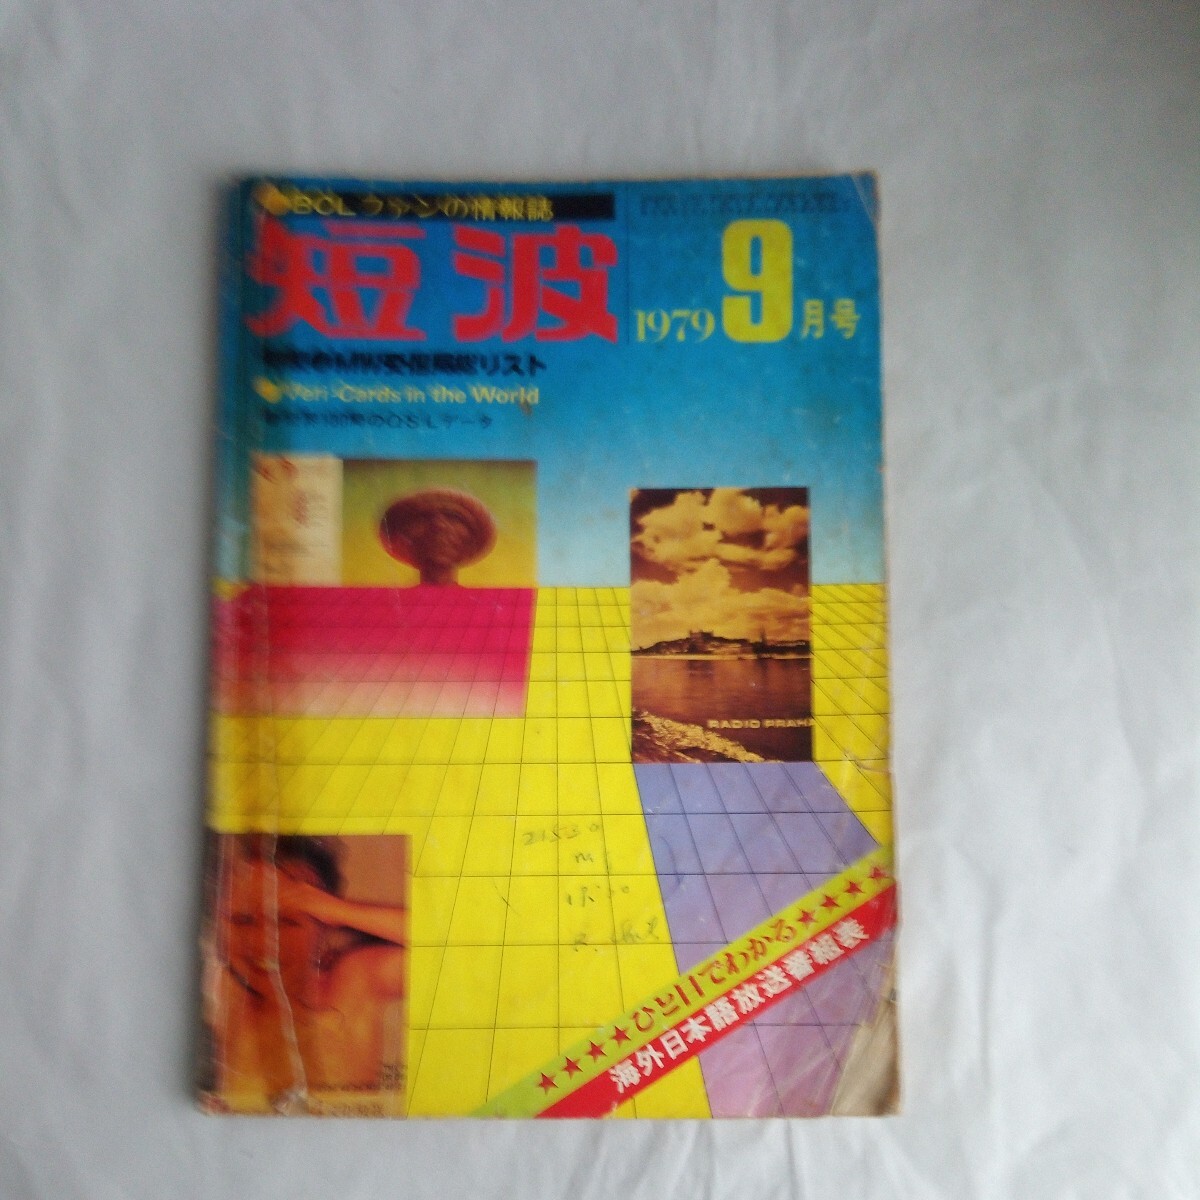 BCL вентилятор. информация журнал короткие волны 1979 год 9 месяц номер Showa Retro книга